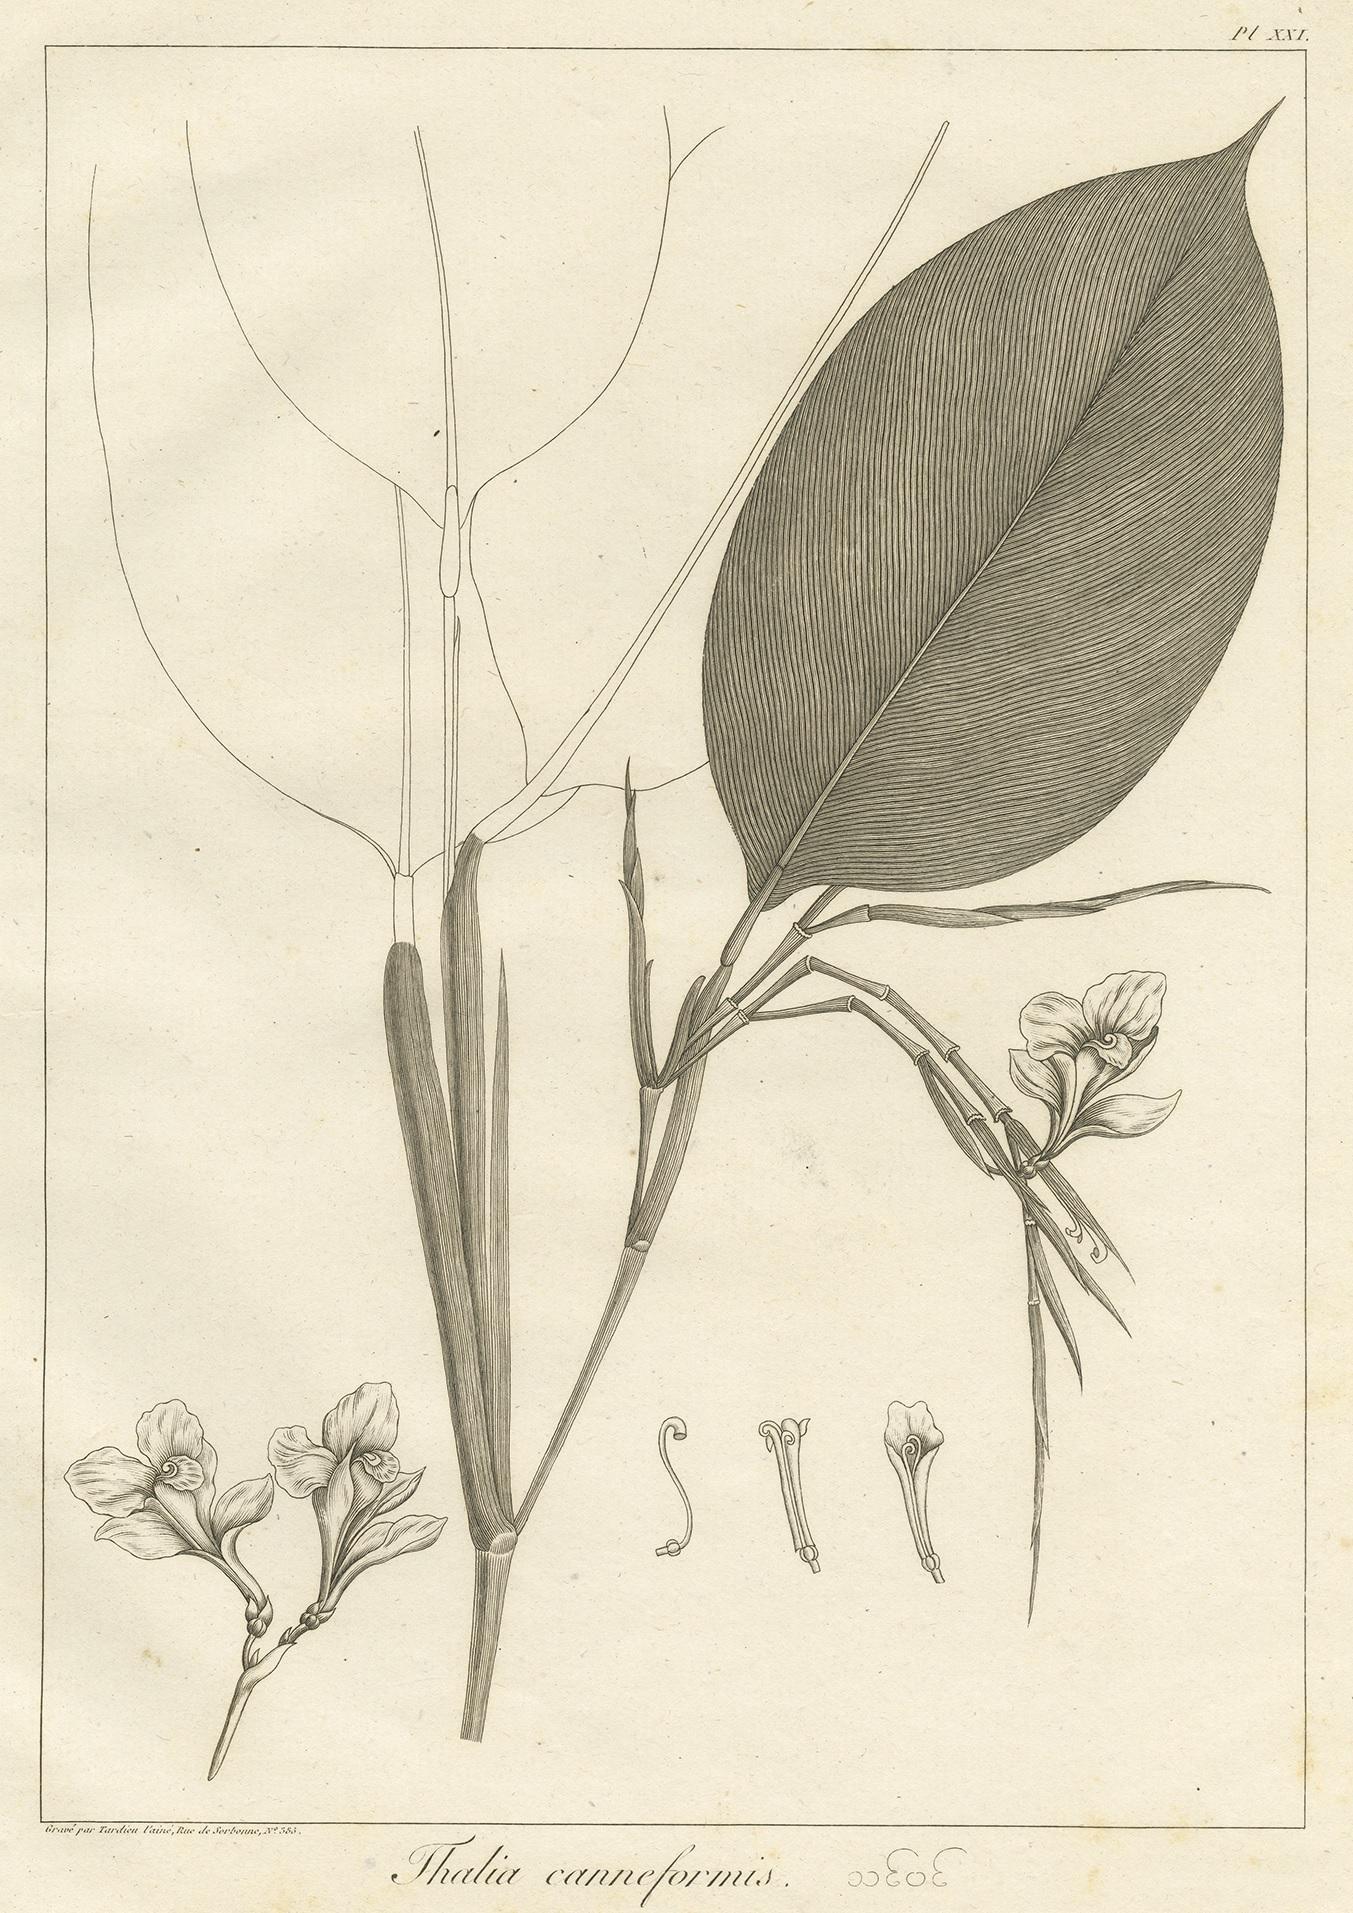 Antique print titled 'Thalia canneformis'. Print of a Thalia plant species. This print originates from 'Relation de l'Ambassade Anglaise, envoyée en 1795 dans le Royaume d'Ava, ou l'Empire des Birmans' by M. Symes. Published 1800.